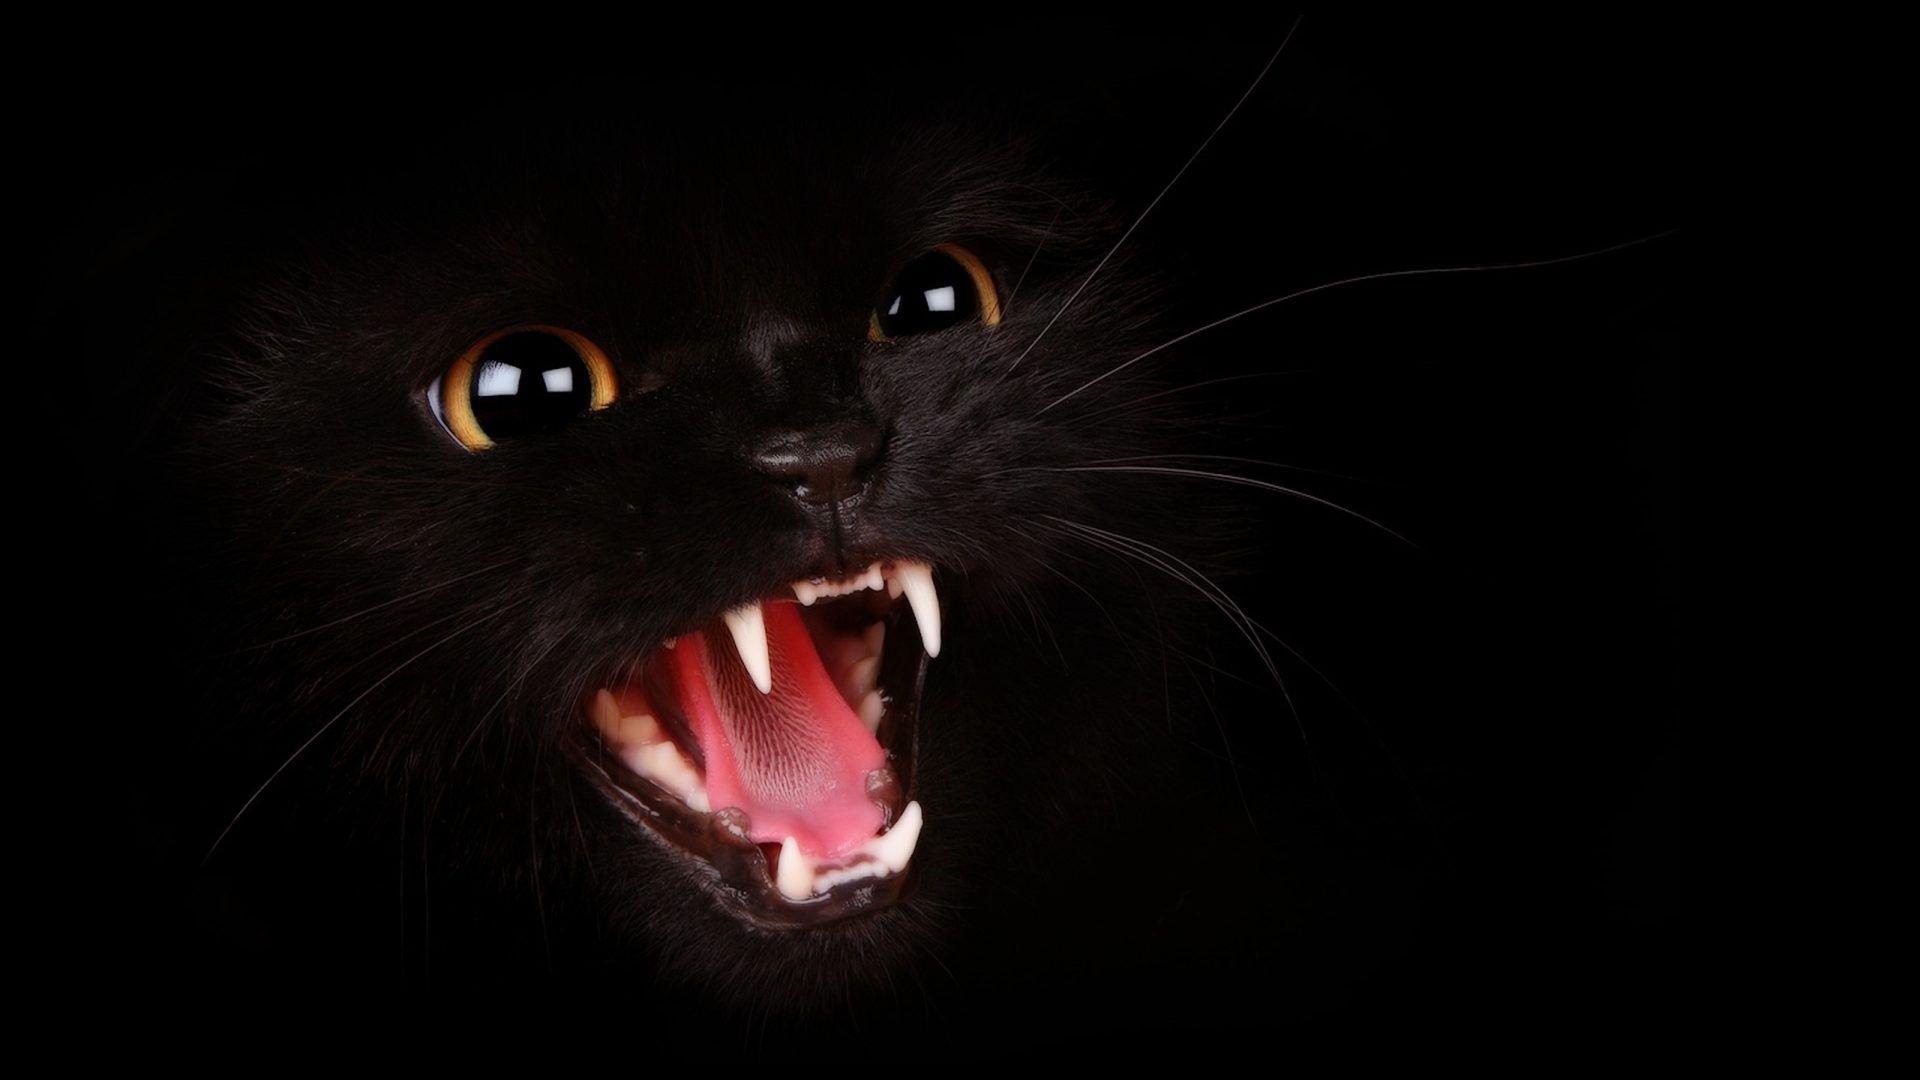 Aggressive Tag wallpaper: Cat Black Aggressive Image Claws